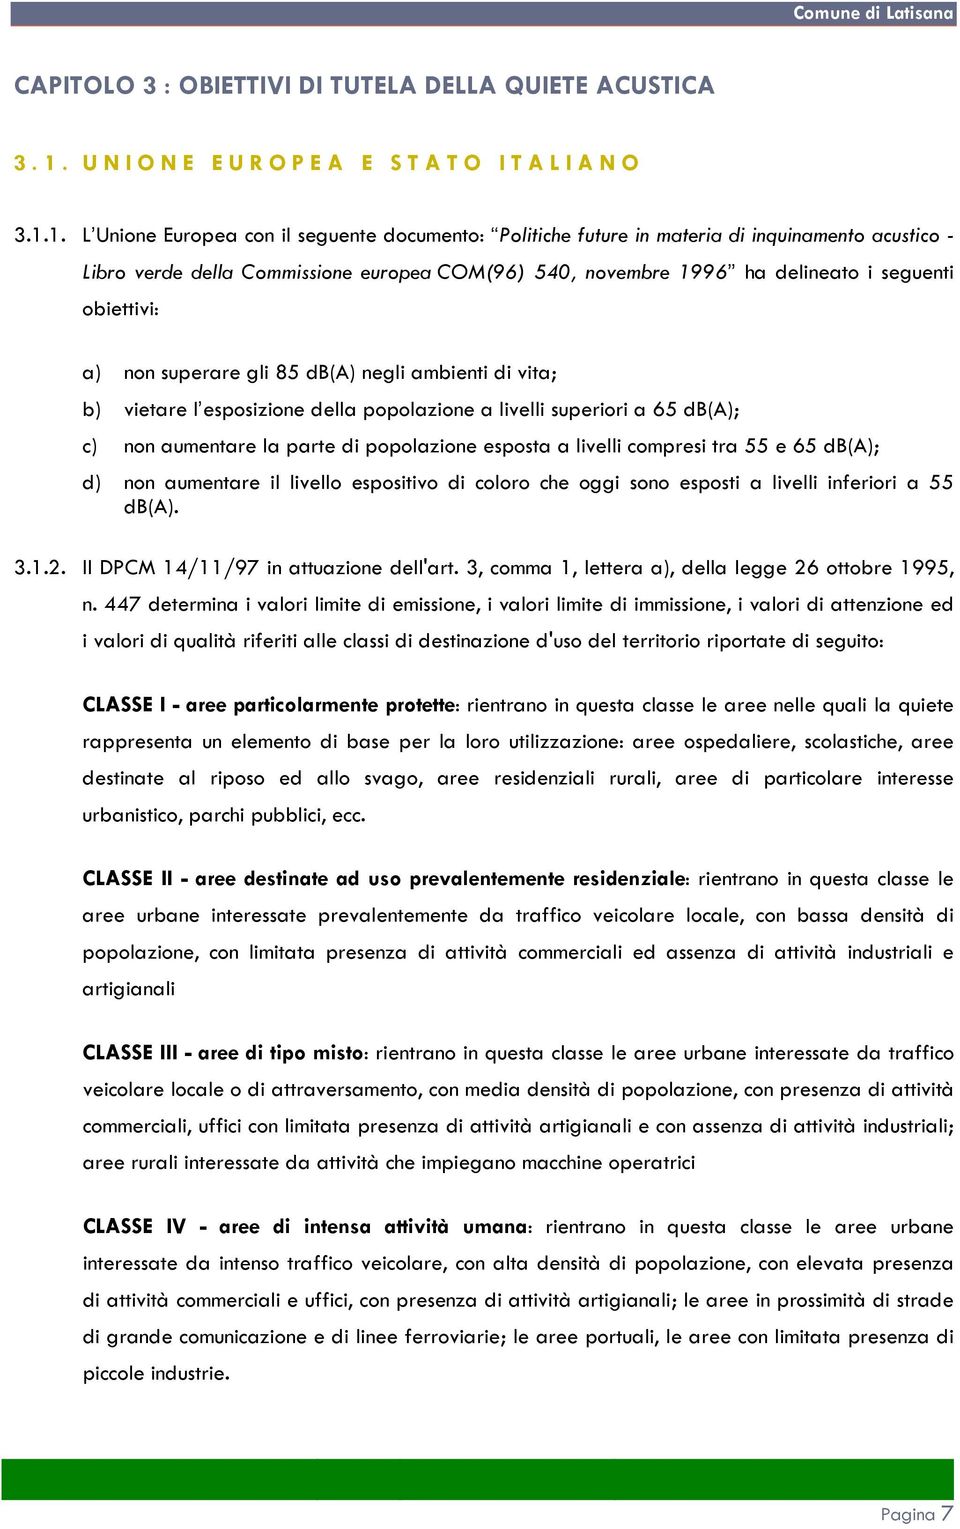 1. L Unione Europea con il seguente documento: Politiche future in materia di inquinamento acustico - Libro verde della Commissione europea COM(96) 540, novembre 1996 ha delineato i seguenti